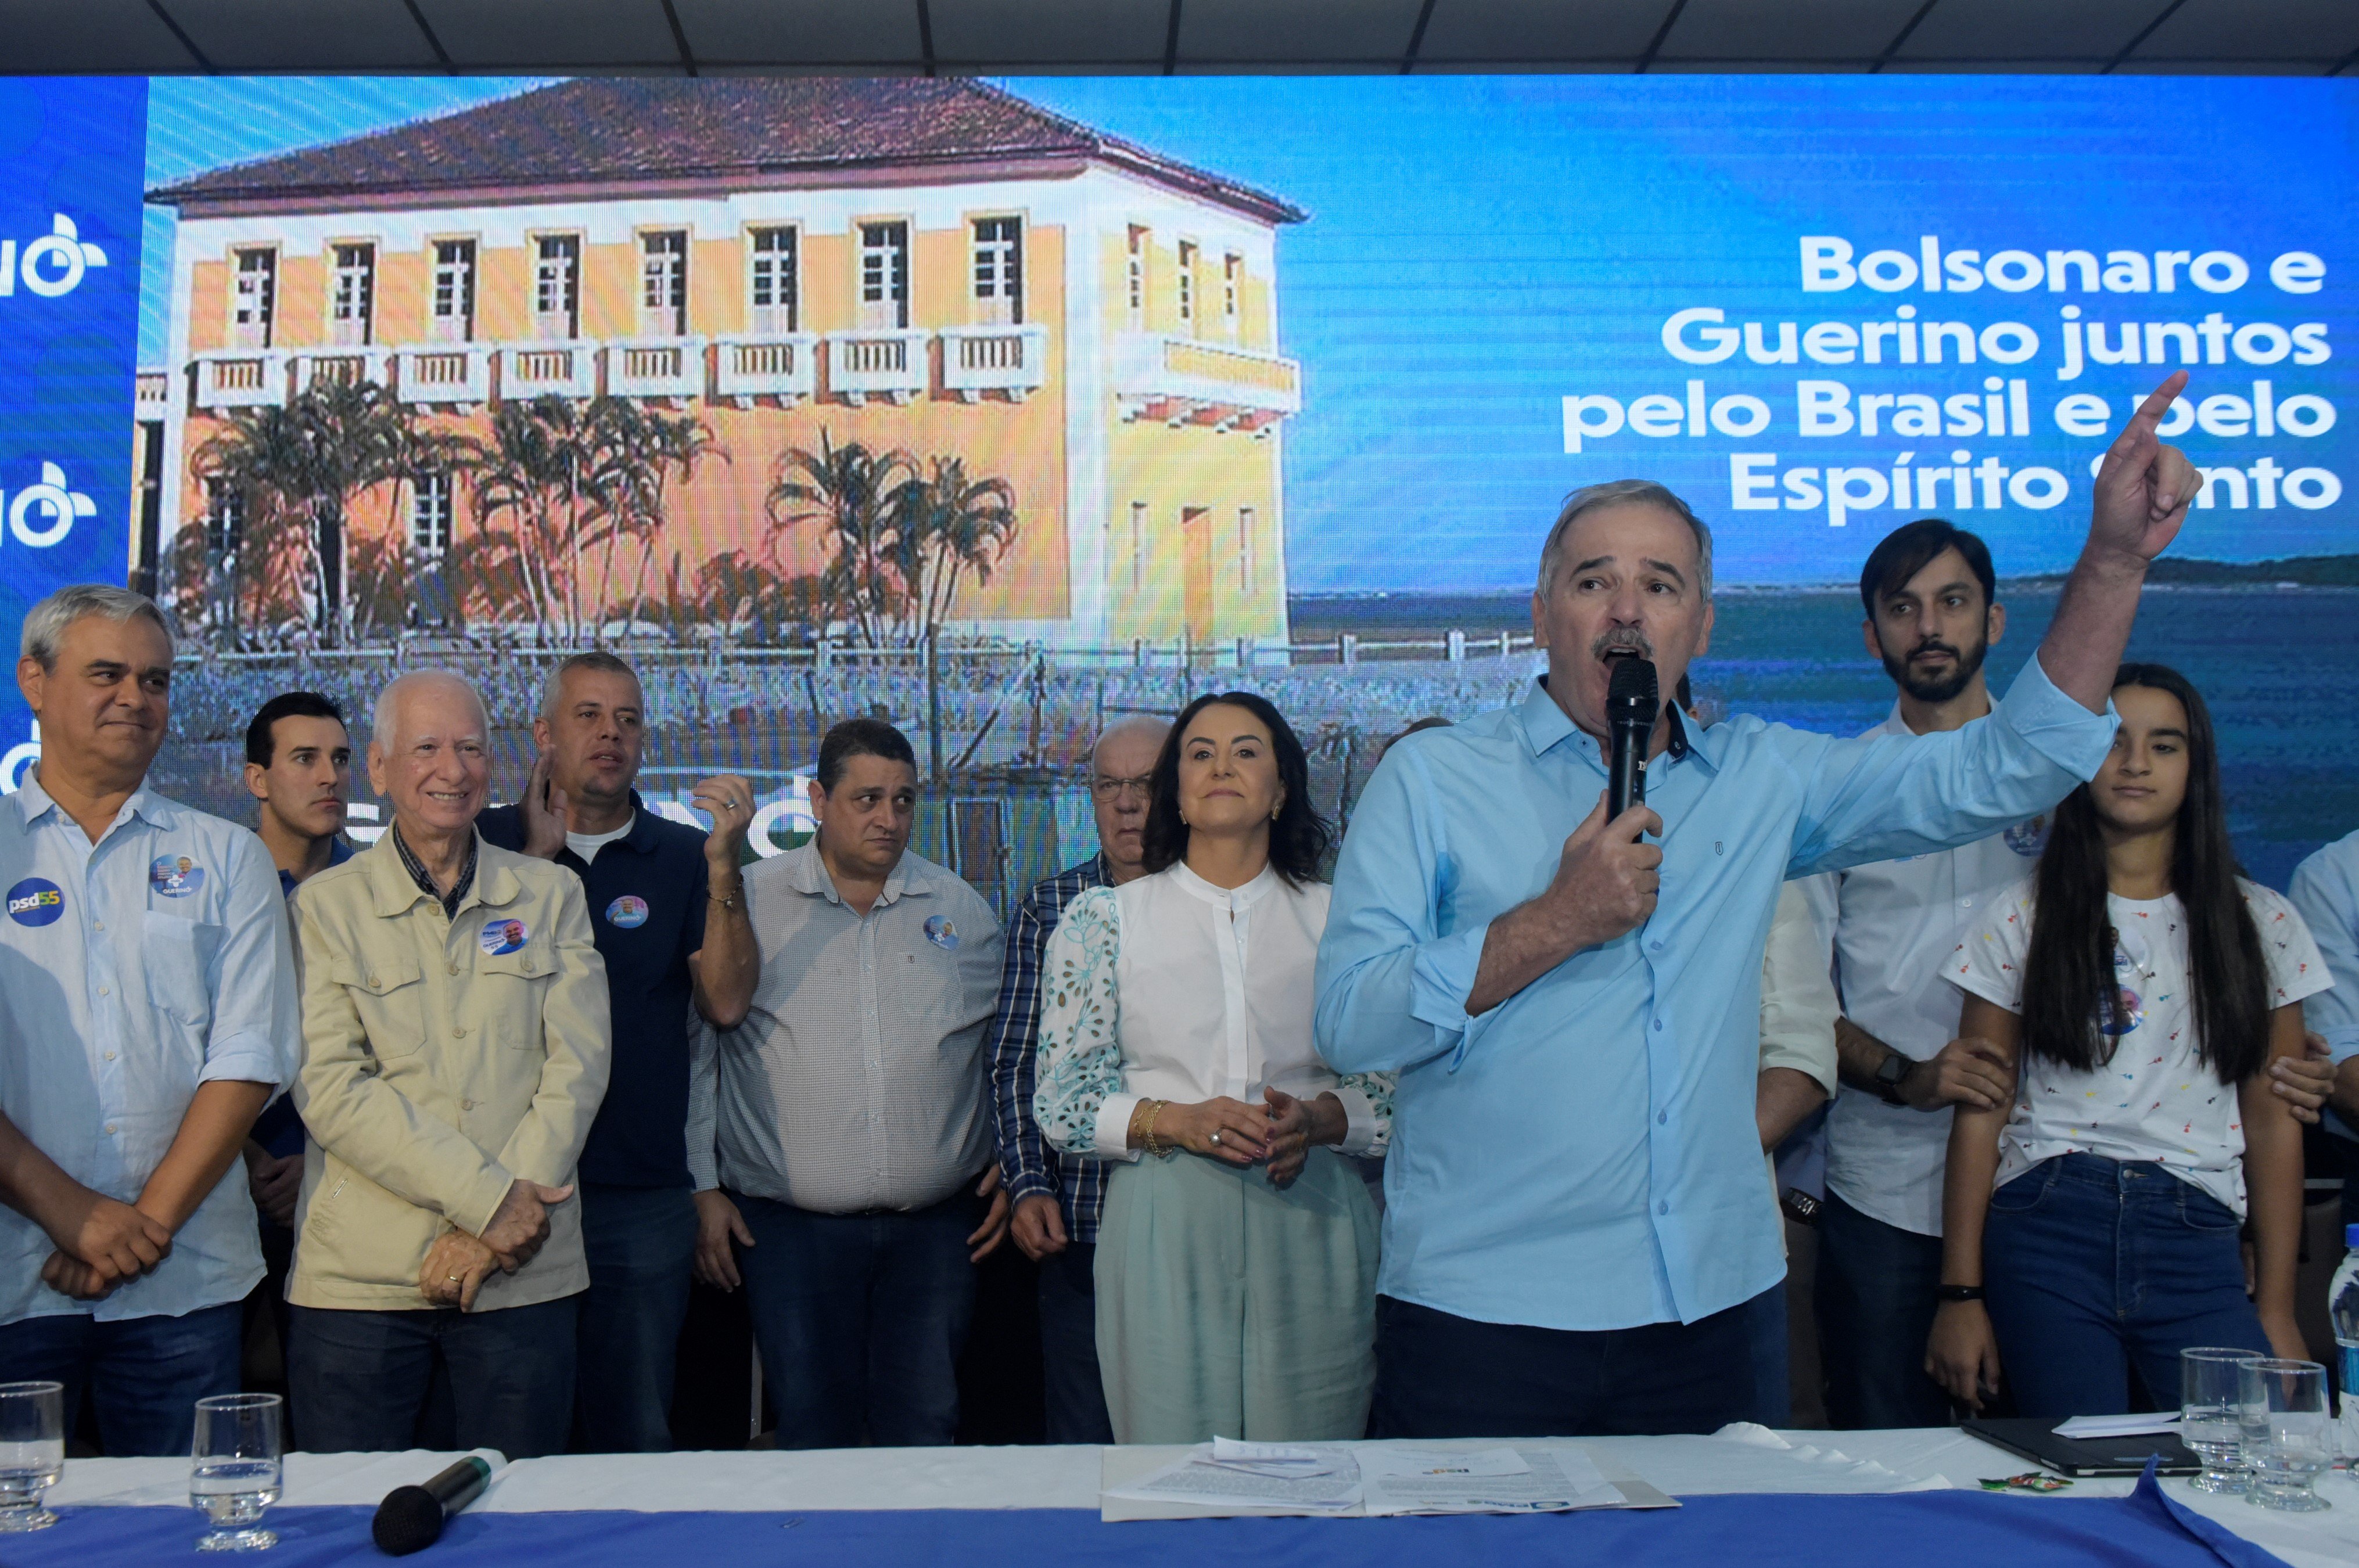 Ex-prefeito de Linhares foi confirmado como candidato a governador neste domingo (31) em convenção partidária; entre suas declarações, disse que bandeira do país não será vermelha